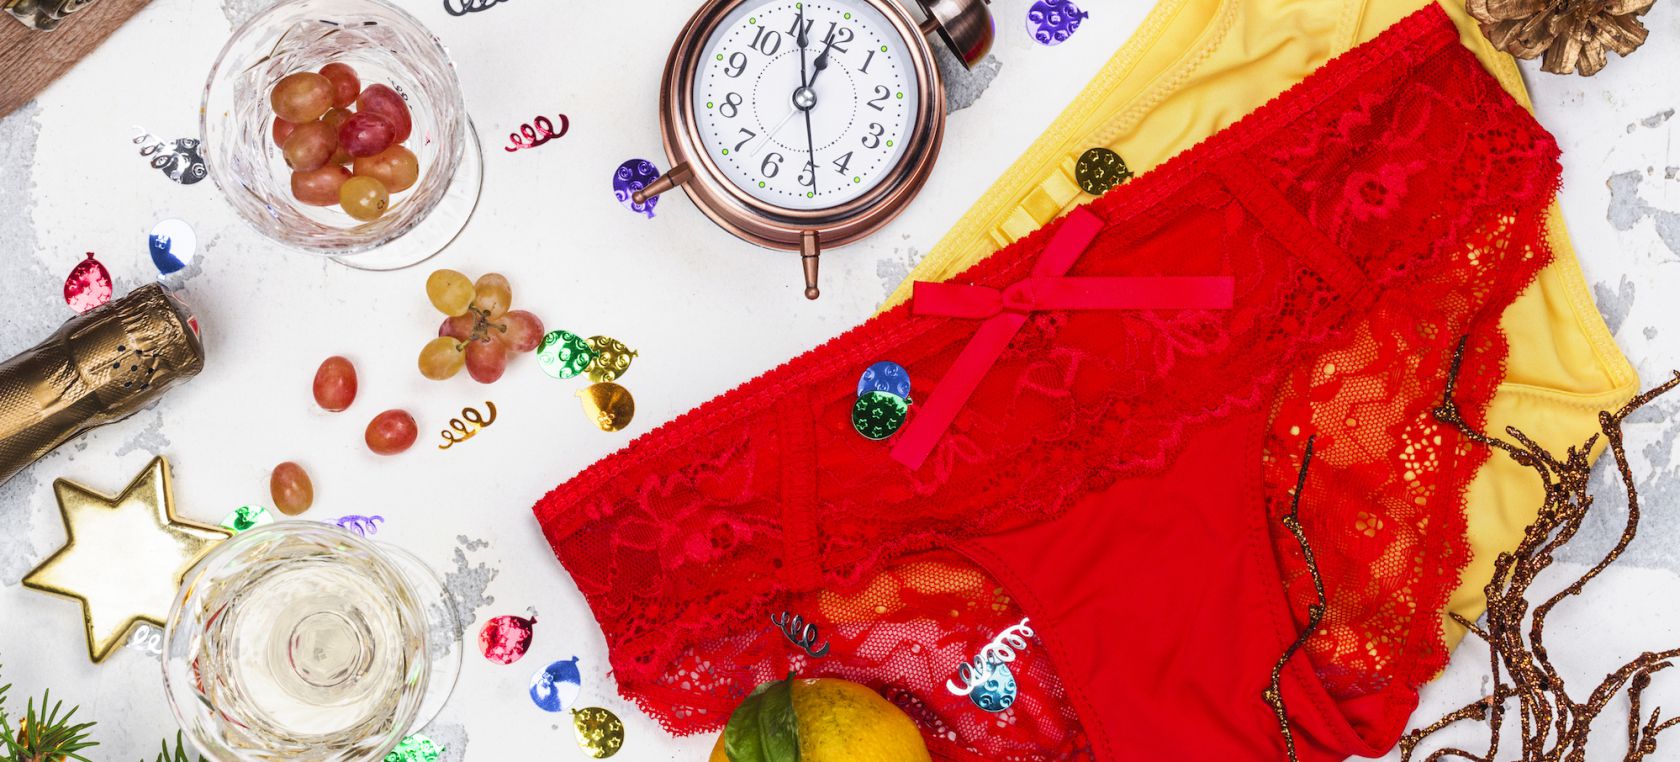 Por qué lleva ropa roja en Nochevieja? 'low cost' para empezar con suerte 2022 | Moda y Belleza | LOS40